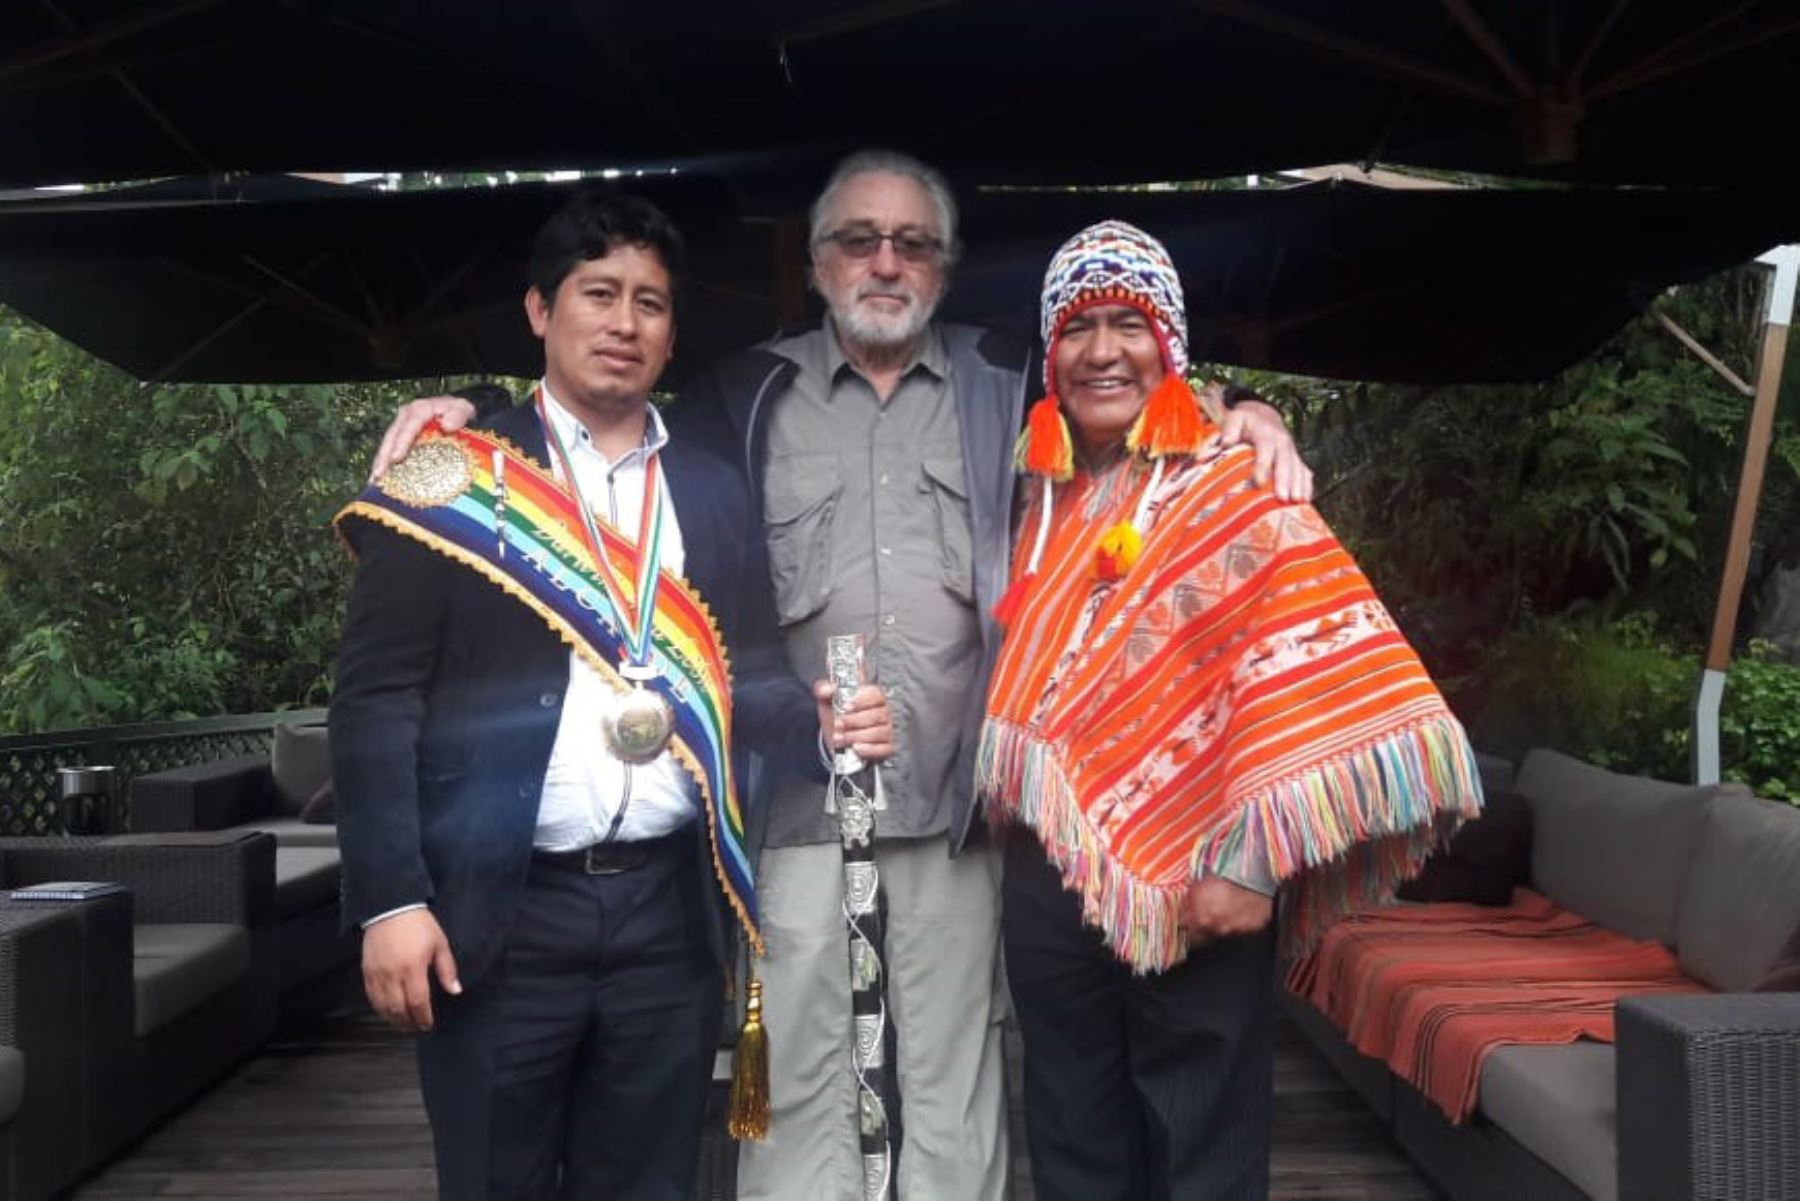 Peru: U.S. actor Robert De Niro decorated in Machu Picchu | News ...